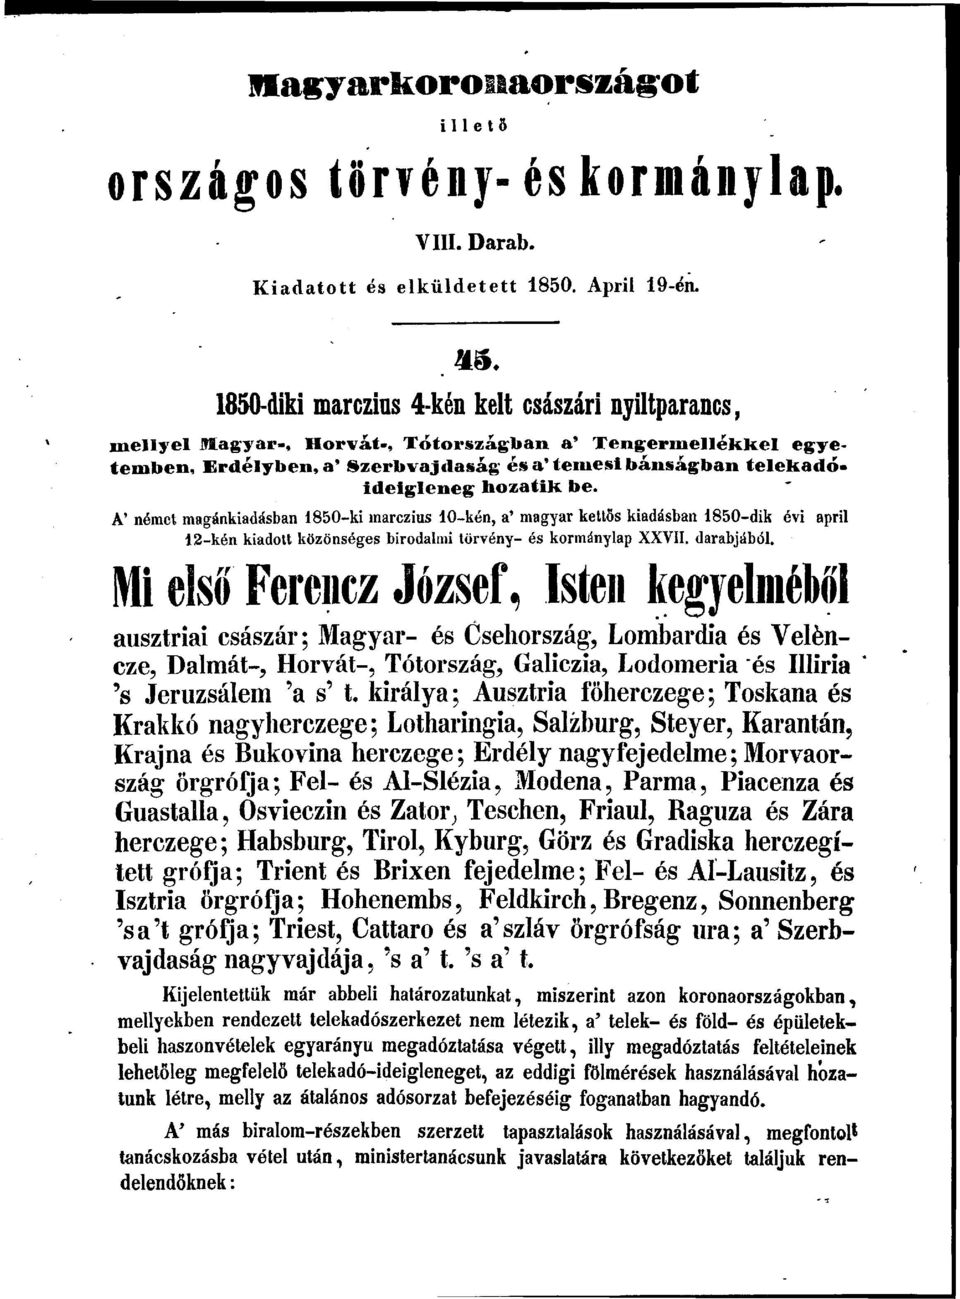 hozatik be. A' német magánkiadásban 1850-ki marczius 10-kén, a' magyar kettős kiadásban 1850-dik évi april 12-kén kiadott közönséges birodalmi törvény- és kormánylap XXVII. darabjából.